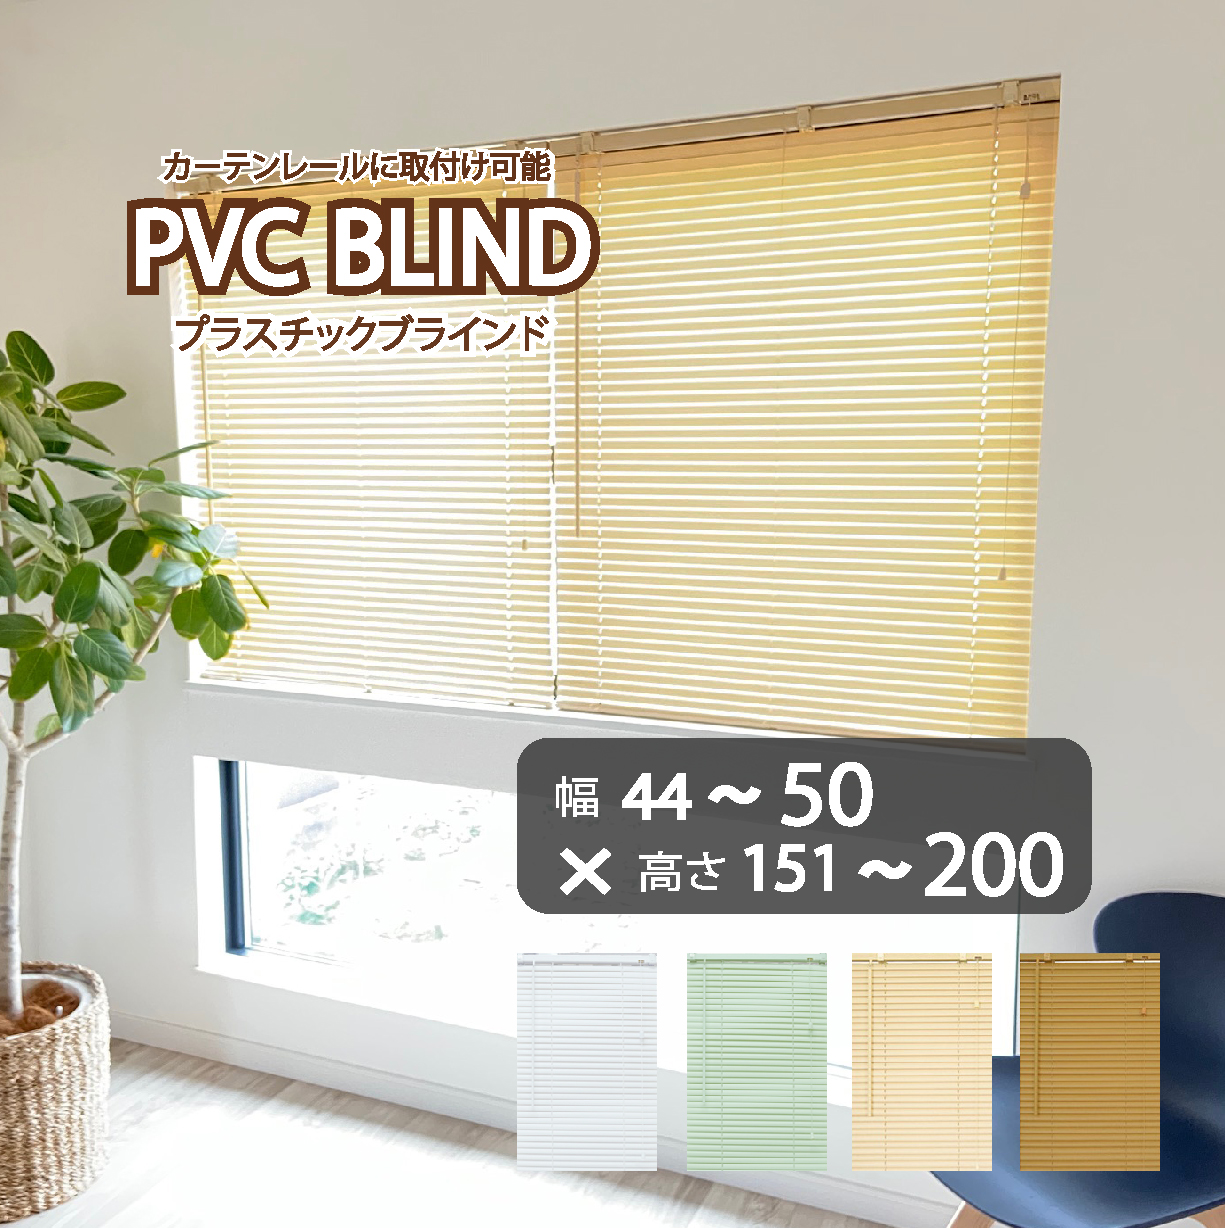 ブラインド カーテン カーテンレール 取付可能 PVC プラスチック 